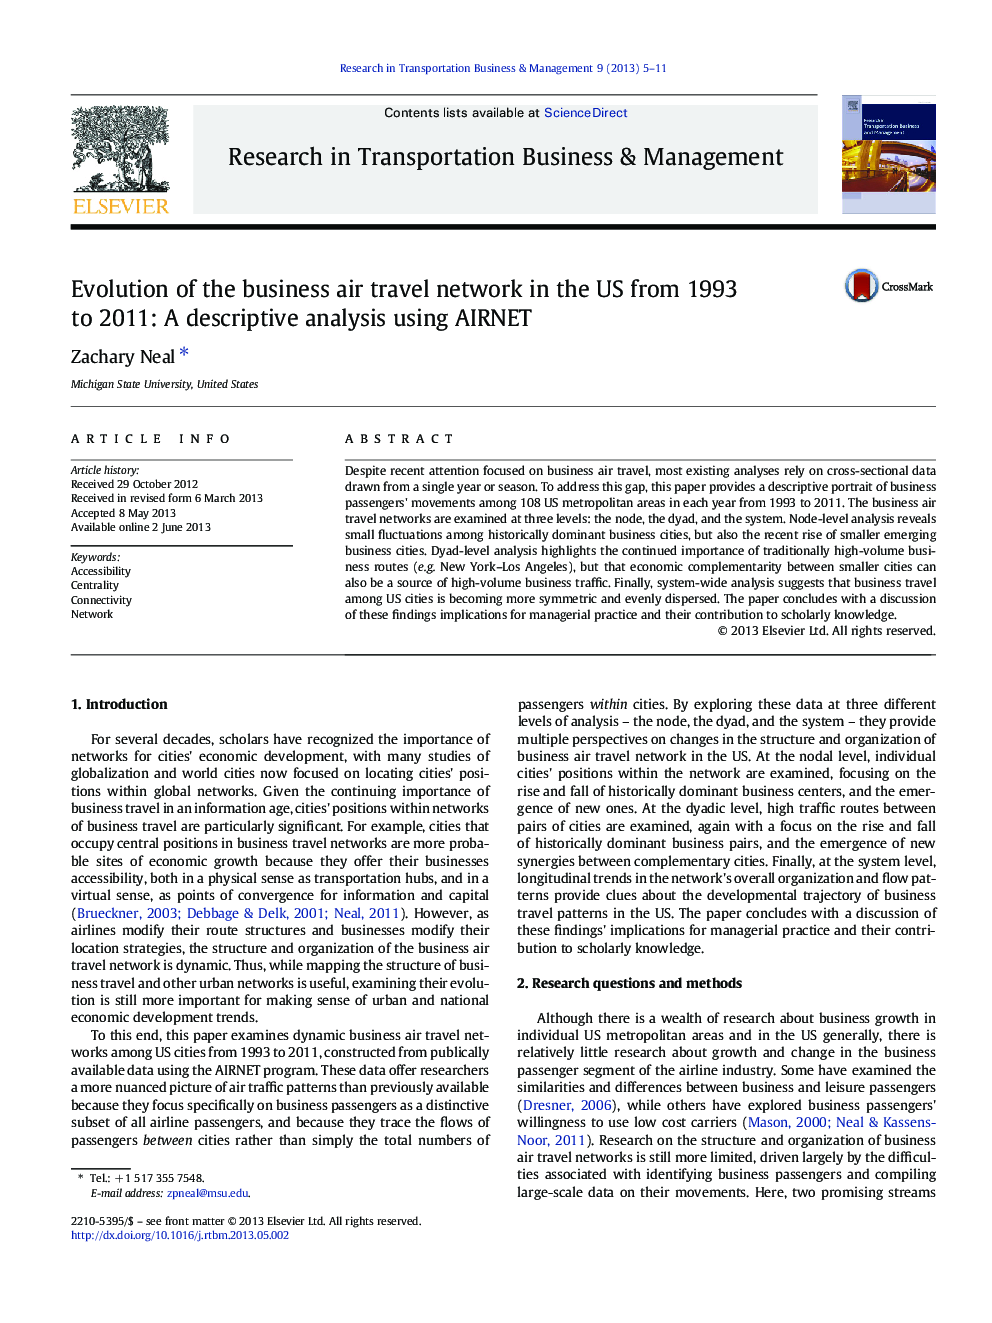 تکامل شبکه سفرهای تجاری هوایی در ایالات متحده 1993-2011: تجزیه و تحلیل توصیفی با استفاده از AIRNET